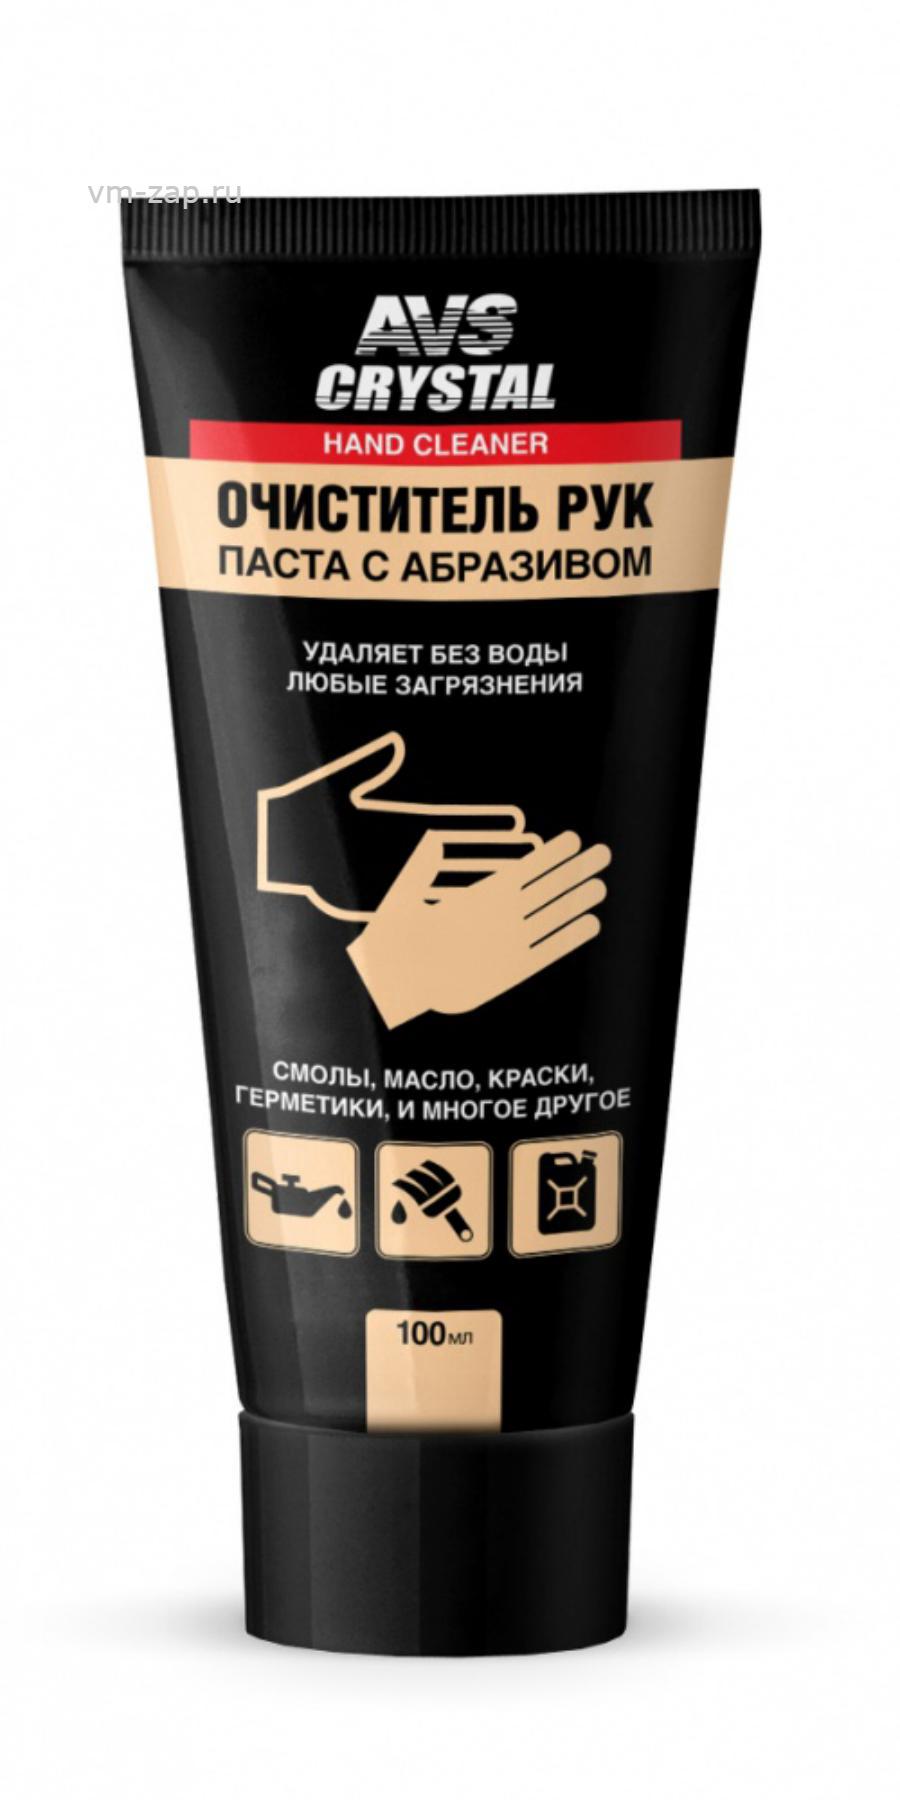 Средство для сильных загрязнений. Очиститель рук (туба) 115 г AVS AVK-041. Очиститель рук (туба)100 мл AVS AVK-041. Очиститель рук туба 100мл. Паста для очистки рук с абразивом.